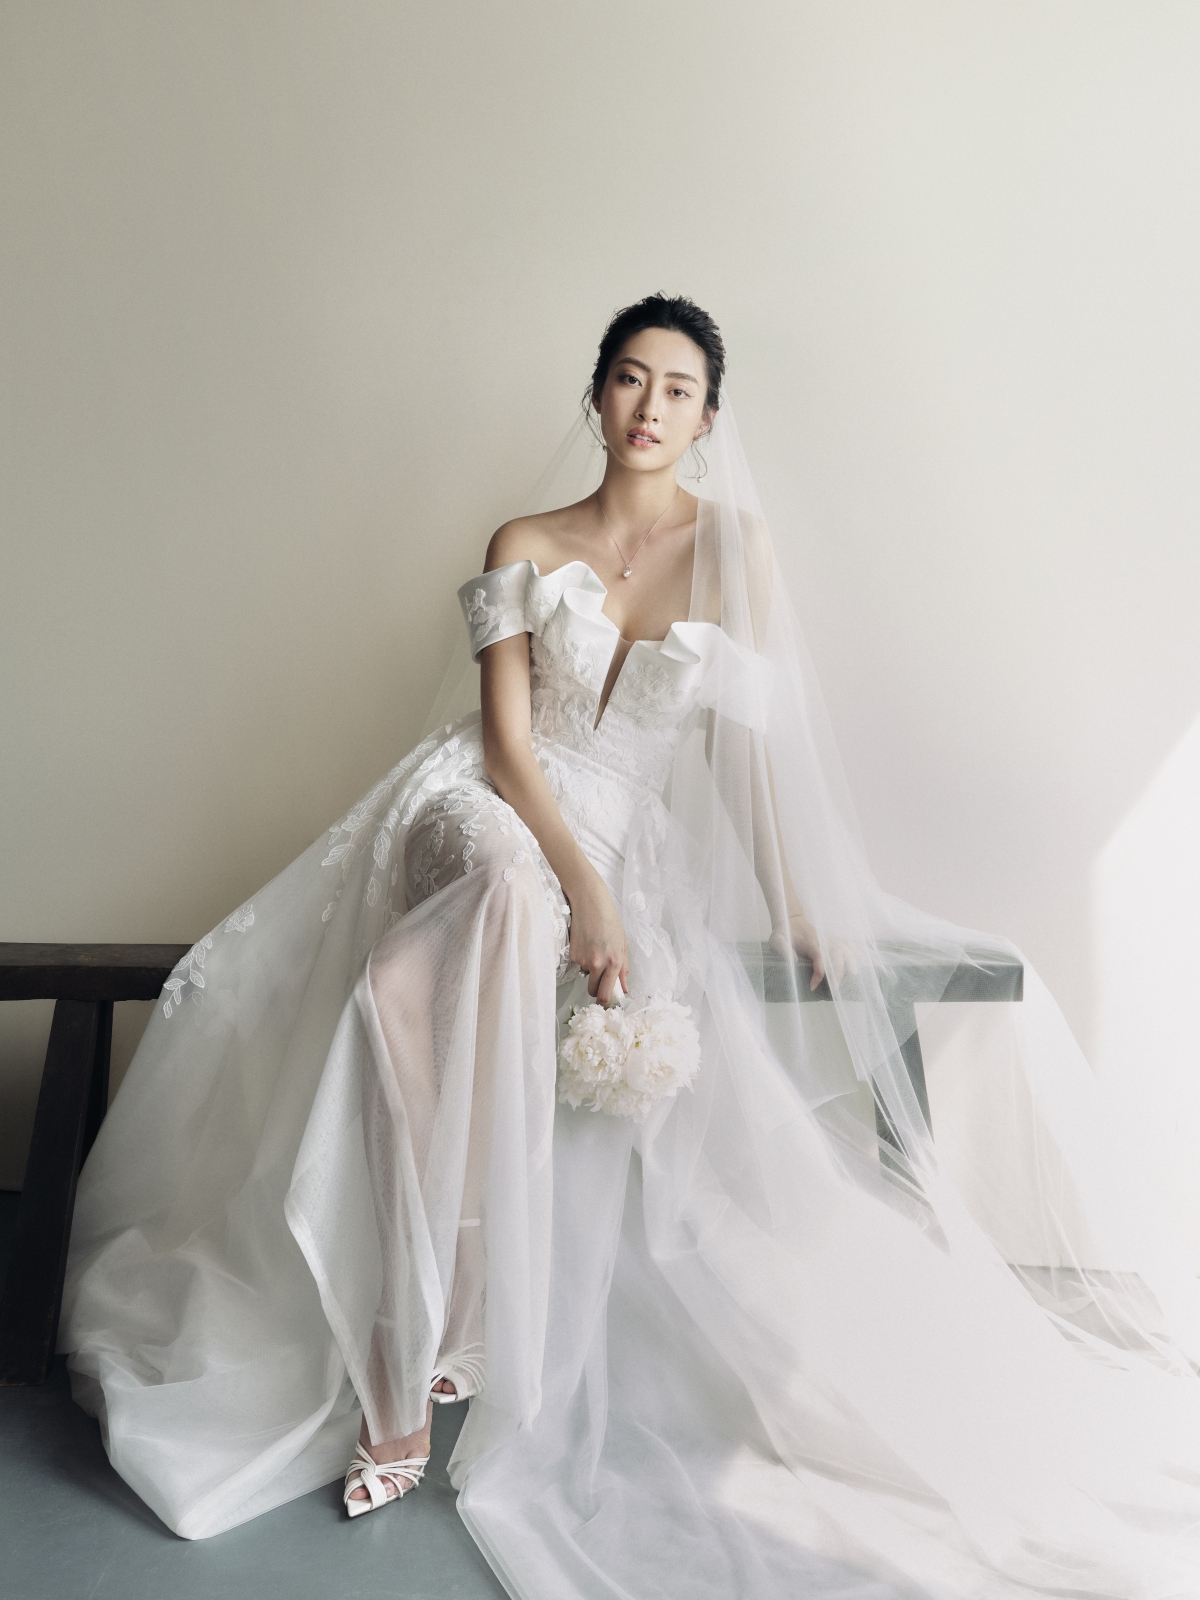 Hoa hậu Lương Thùy Linh làm cô dâu đẹp thanh khiết trong bộ ảnh mới - Ảnh 3.